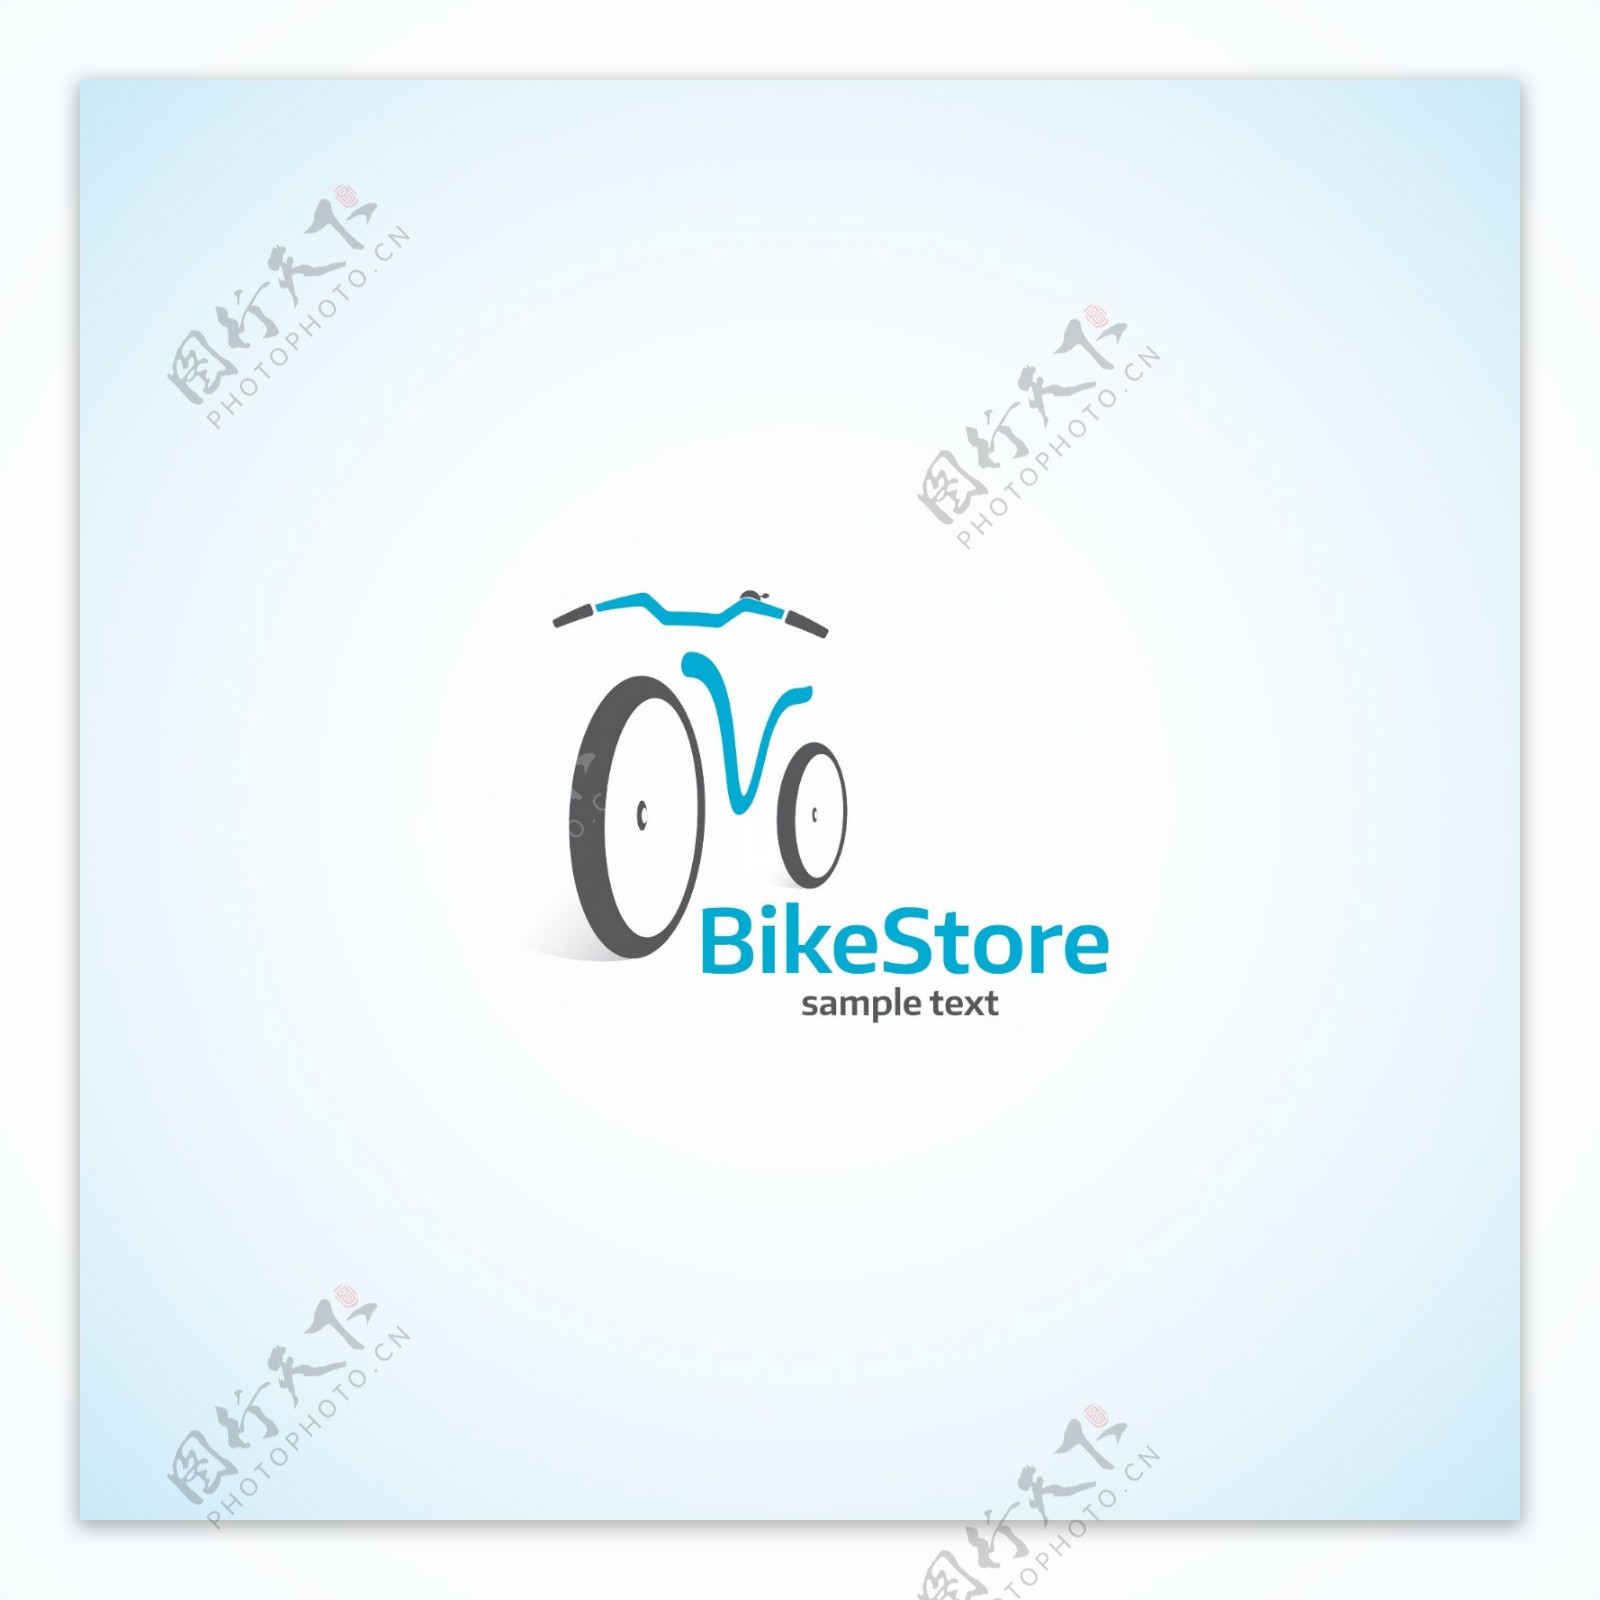 自行车商店标志设计矢量素材下载